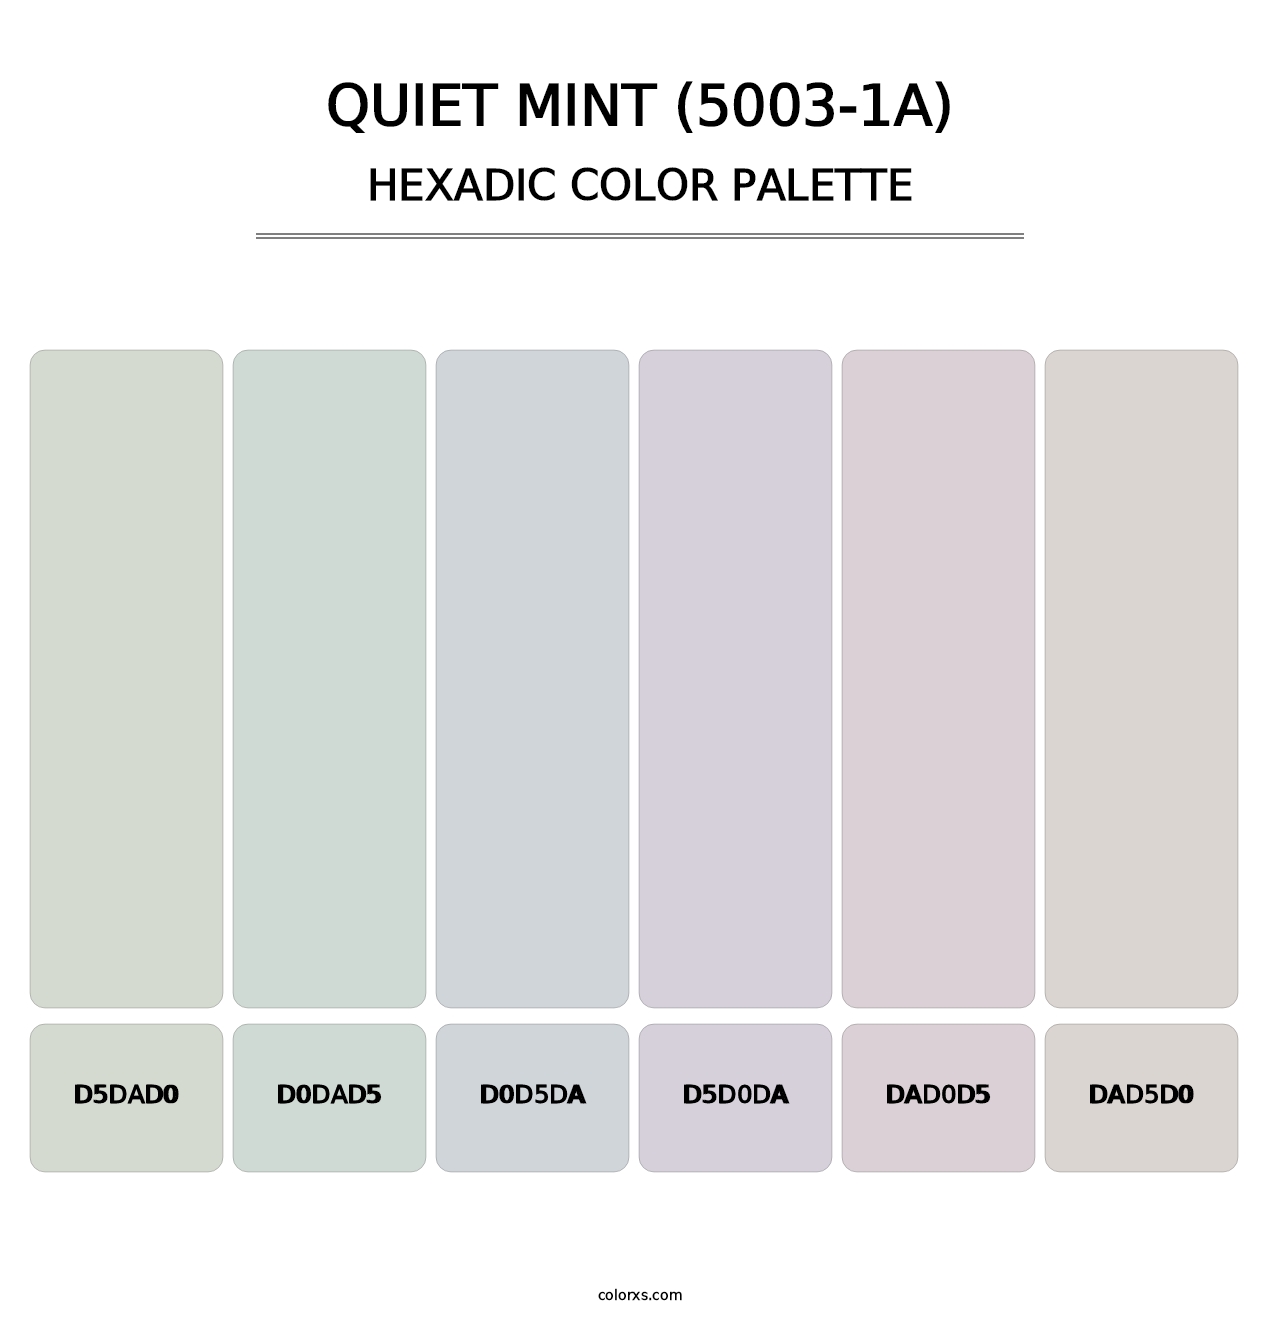 Quiet Mint (5003-1A) - Hexadic Color Palette